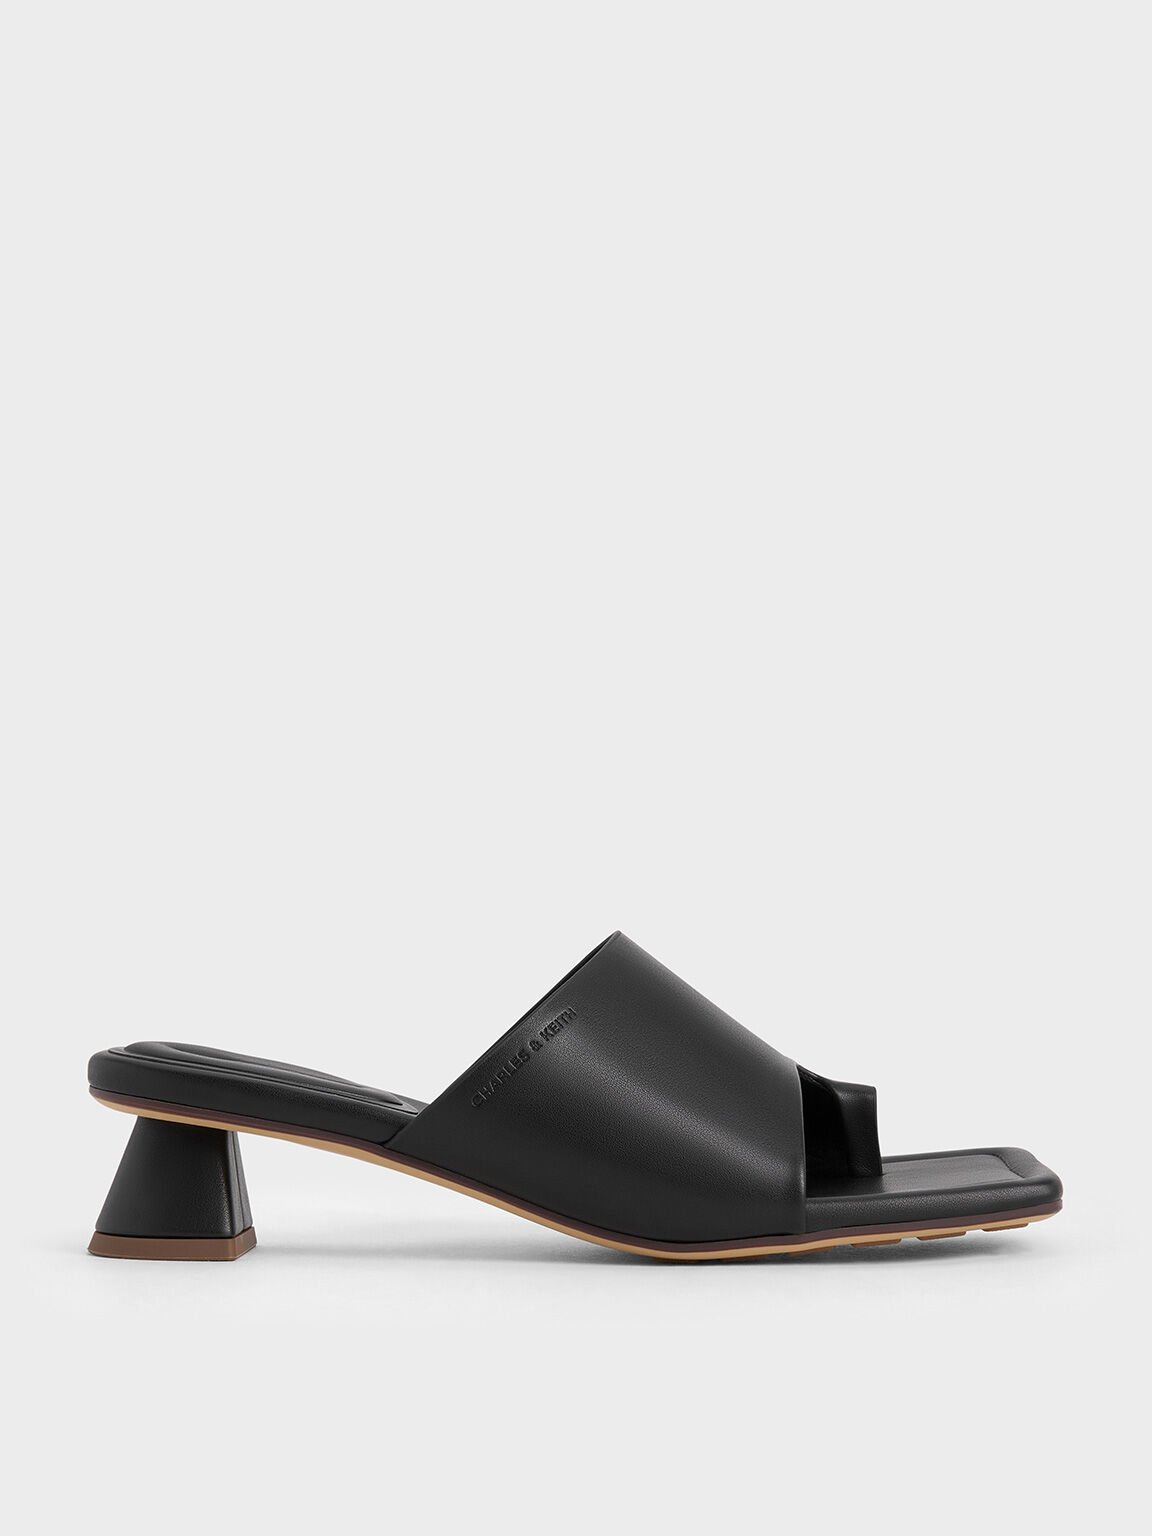 Asymmetric Square-Toe Toe-Ring Sandals, Black, hi-res